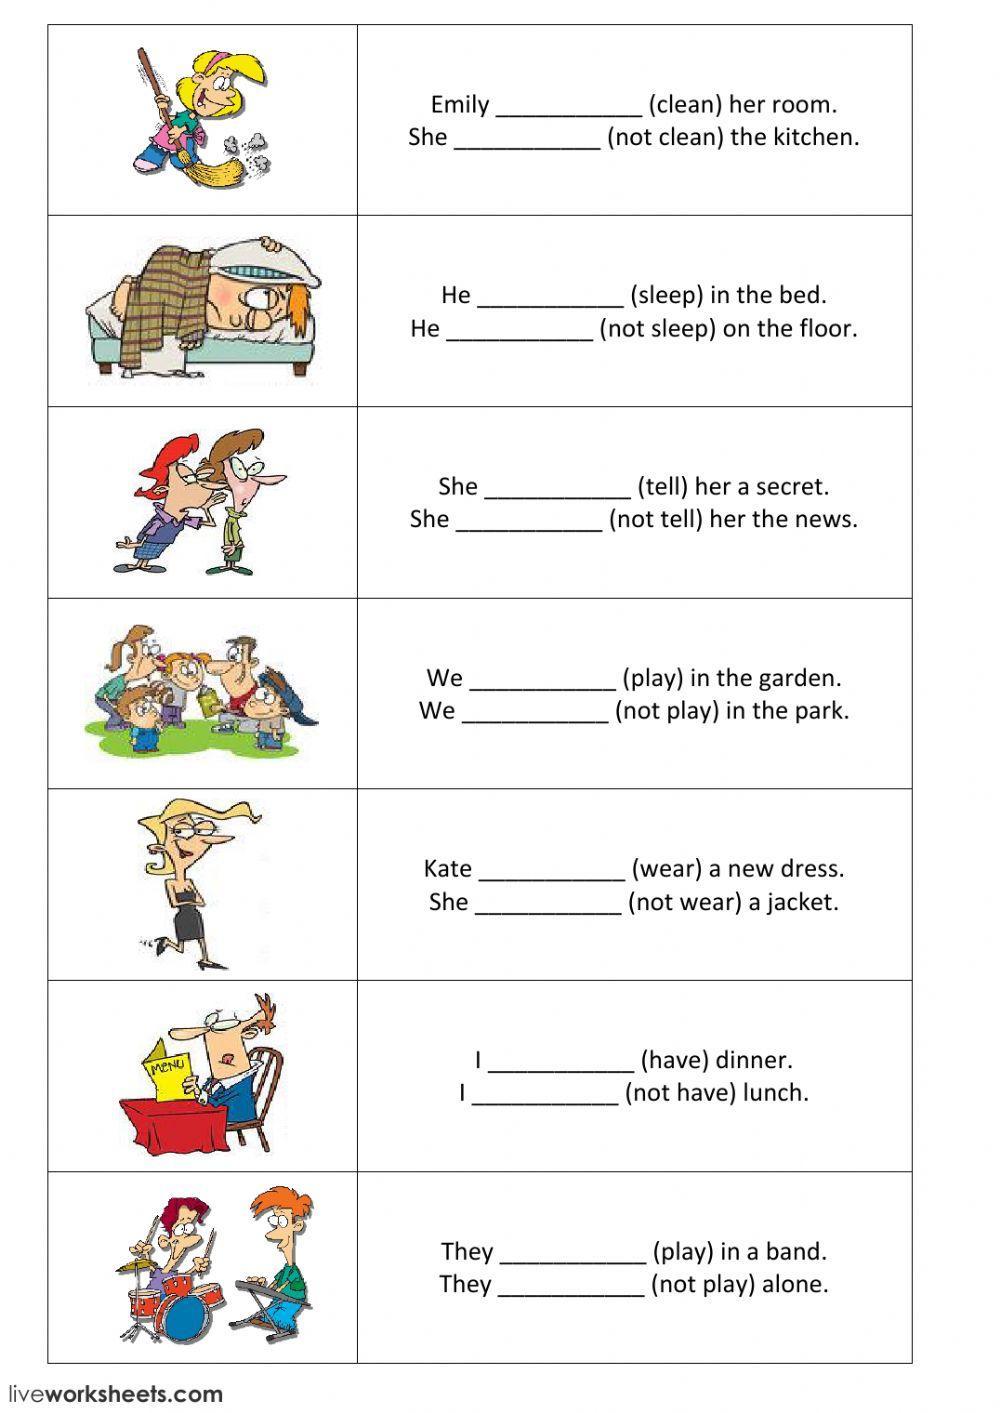 Present simple - positive and negative sentences - part 2